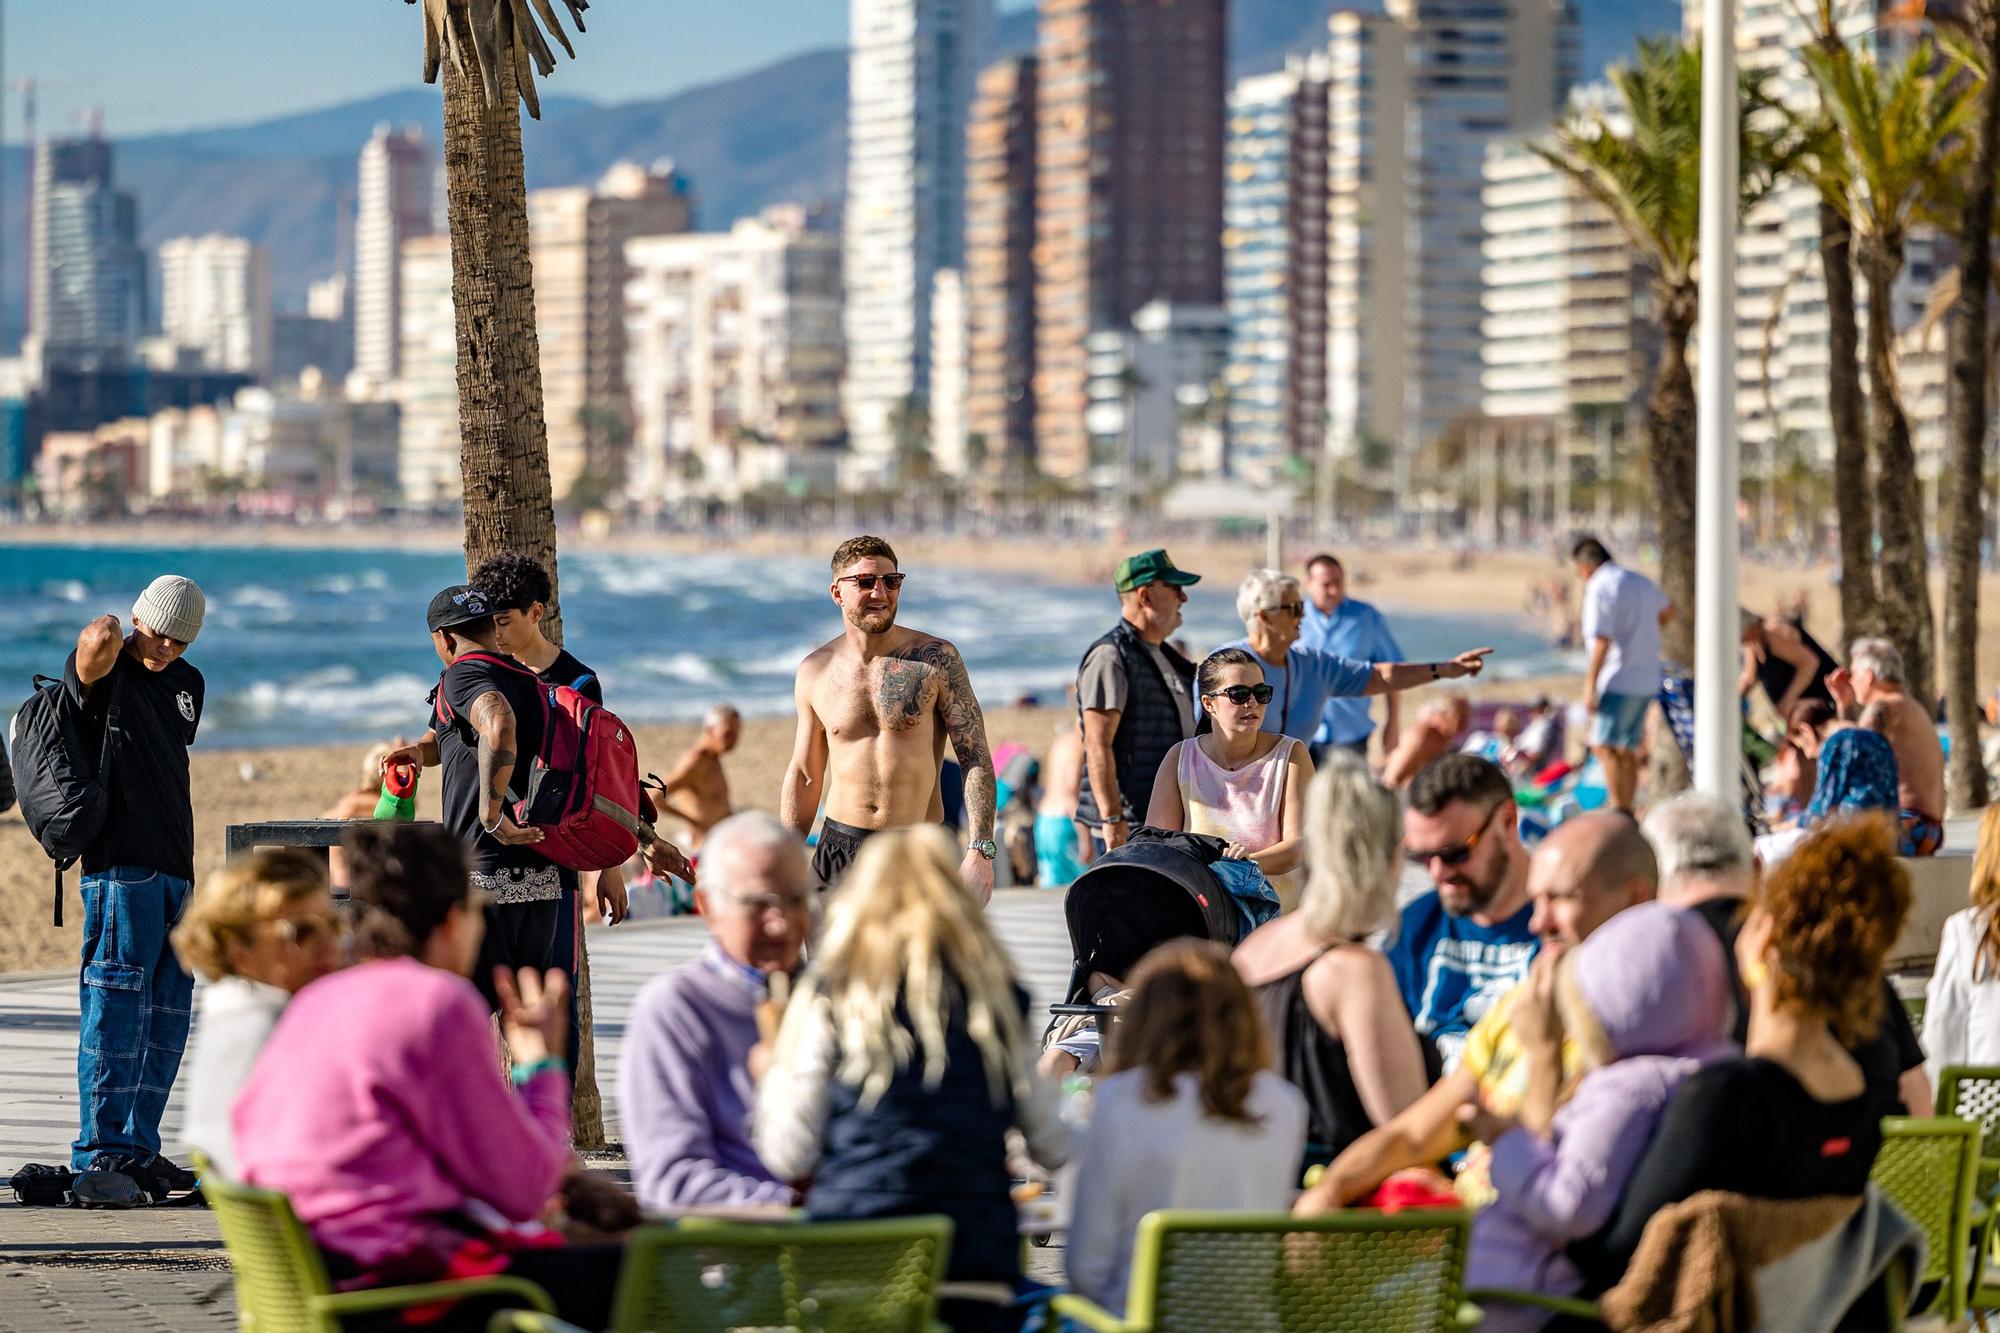 6.000 millones de gasto en la Costa Blanca del turismo internacional/ El aeropuerto de Alicante-Elche culmina el año con 13,5 millones de pasajeros, un 90% de los pasajeros de 2019